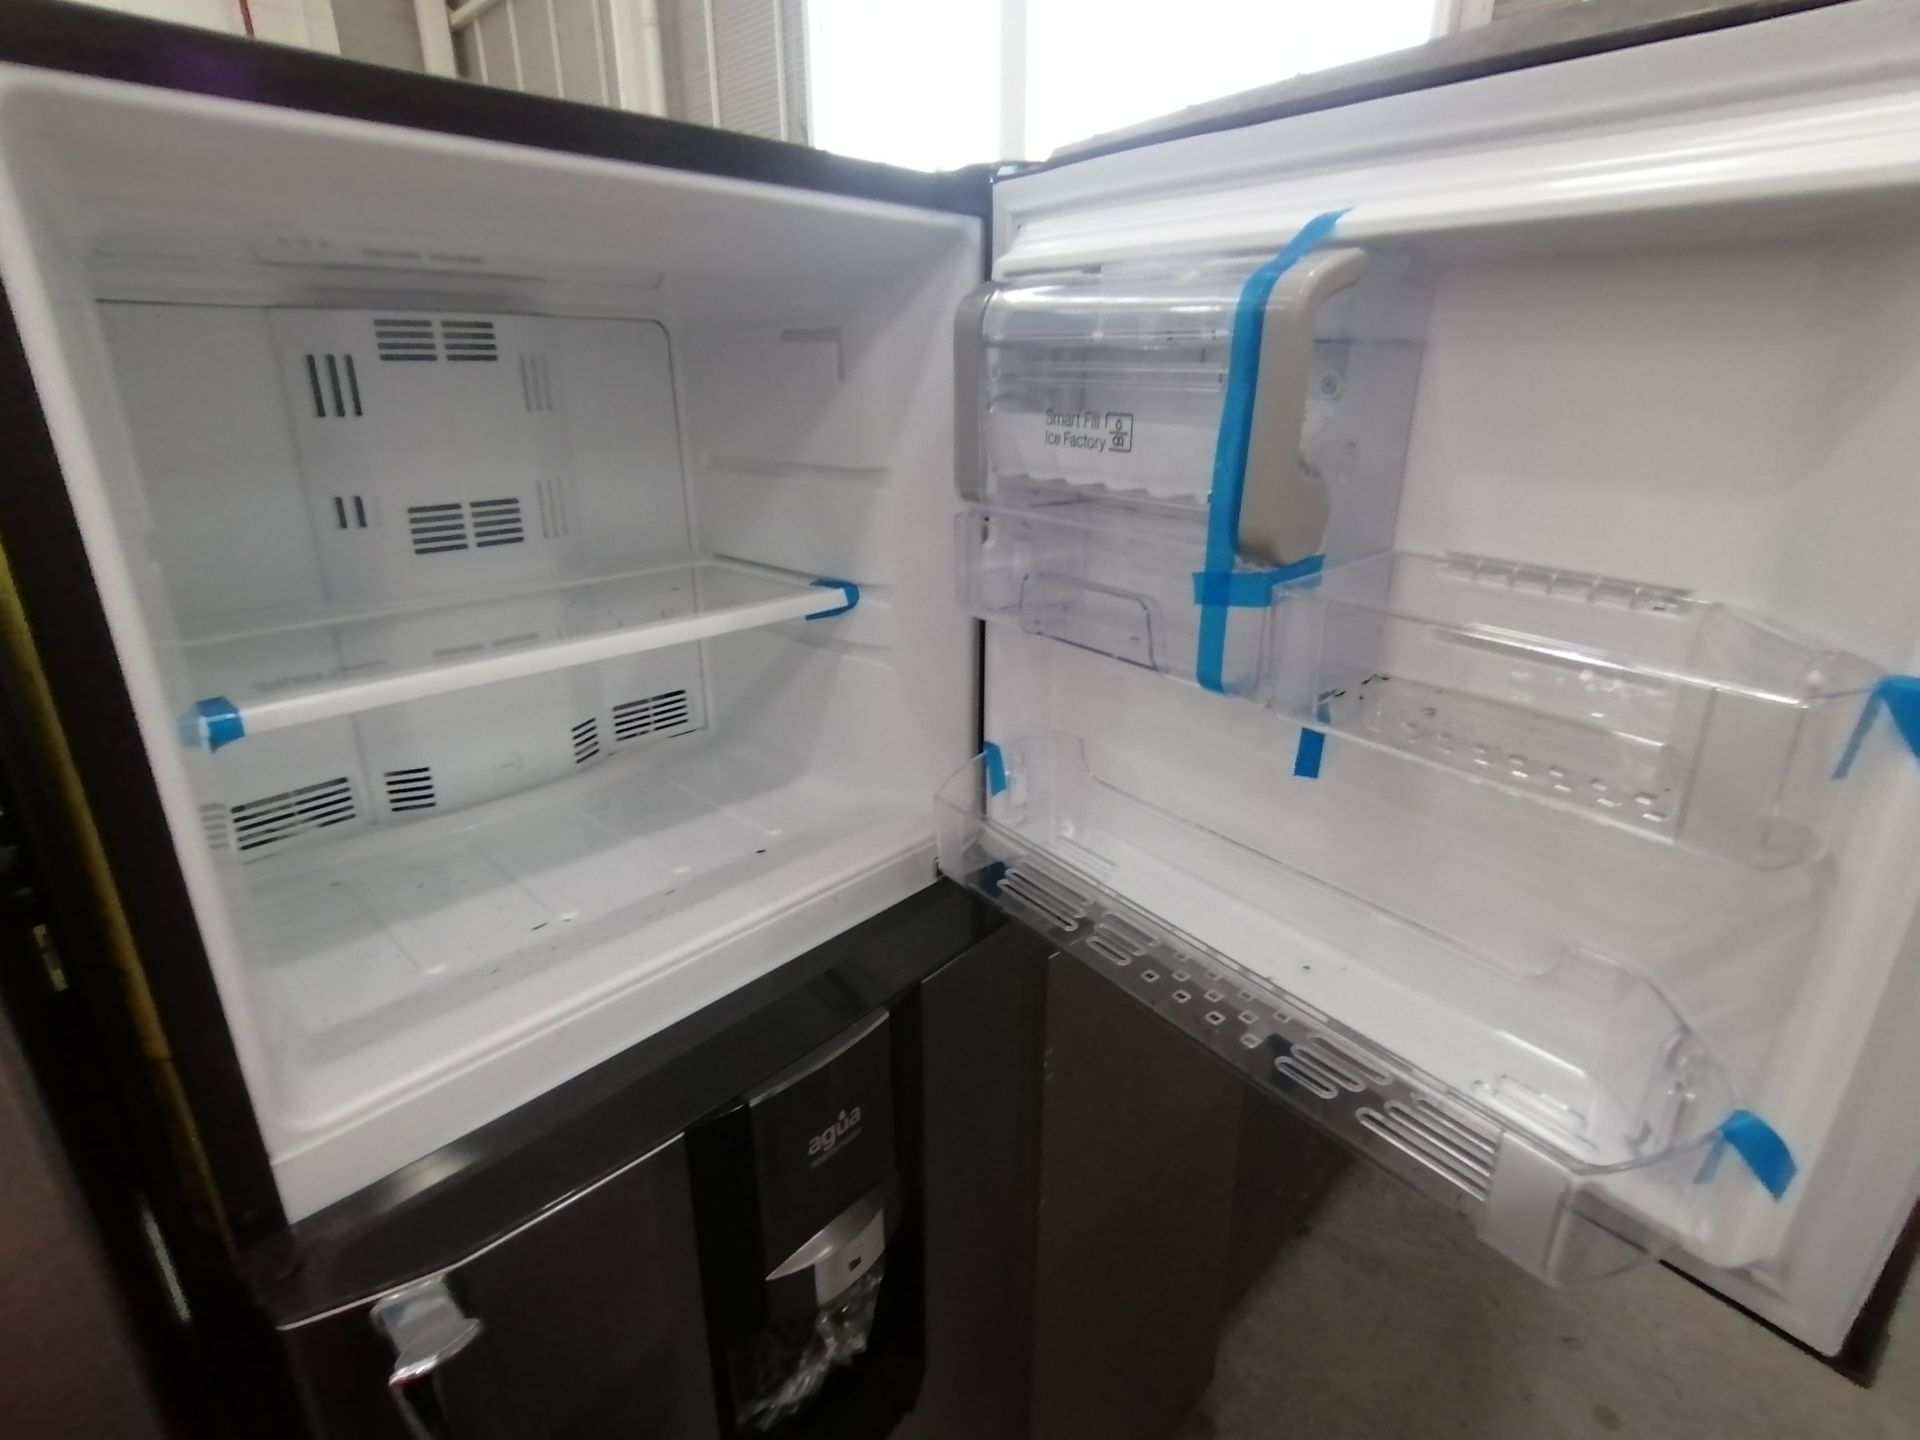 1 Refrigerador Marca Samsung, Modelo rf220fctas8, Serie BBR100057N, Color Gris, Golpeado, Favor de - Image 8 of 16